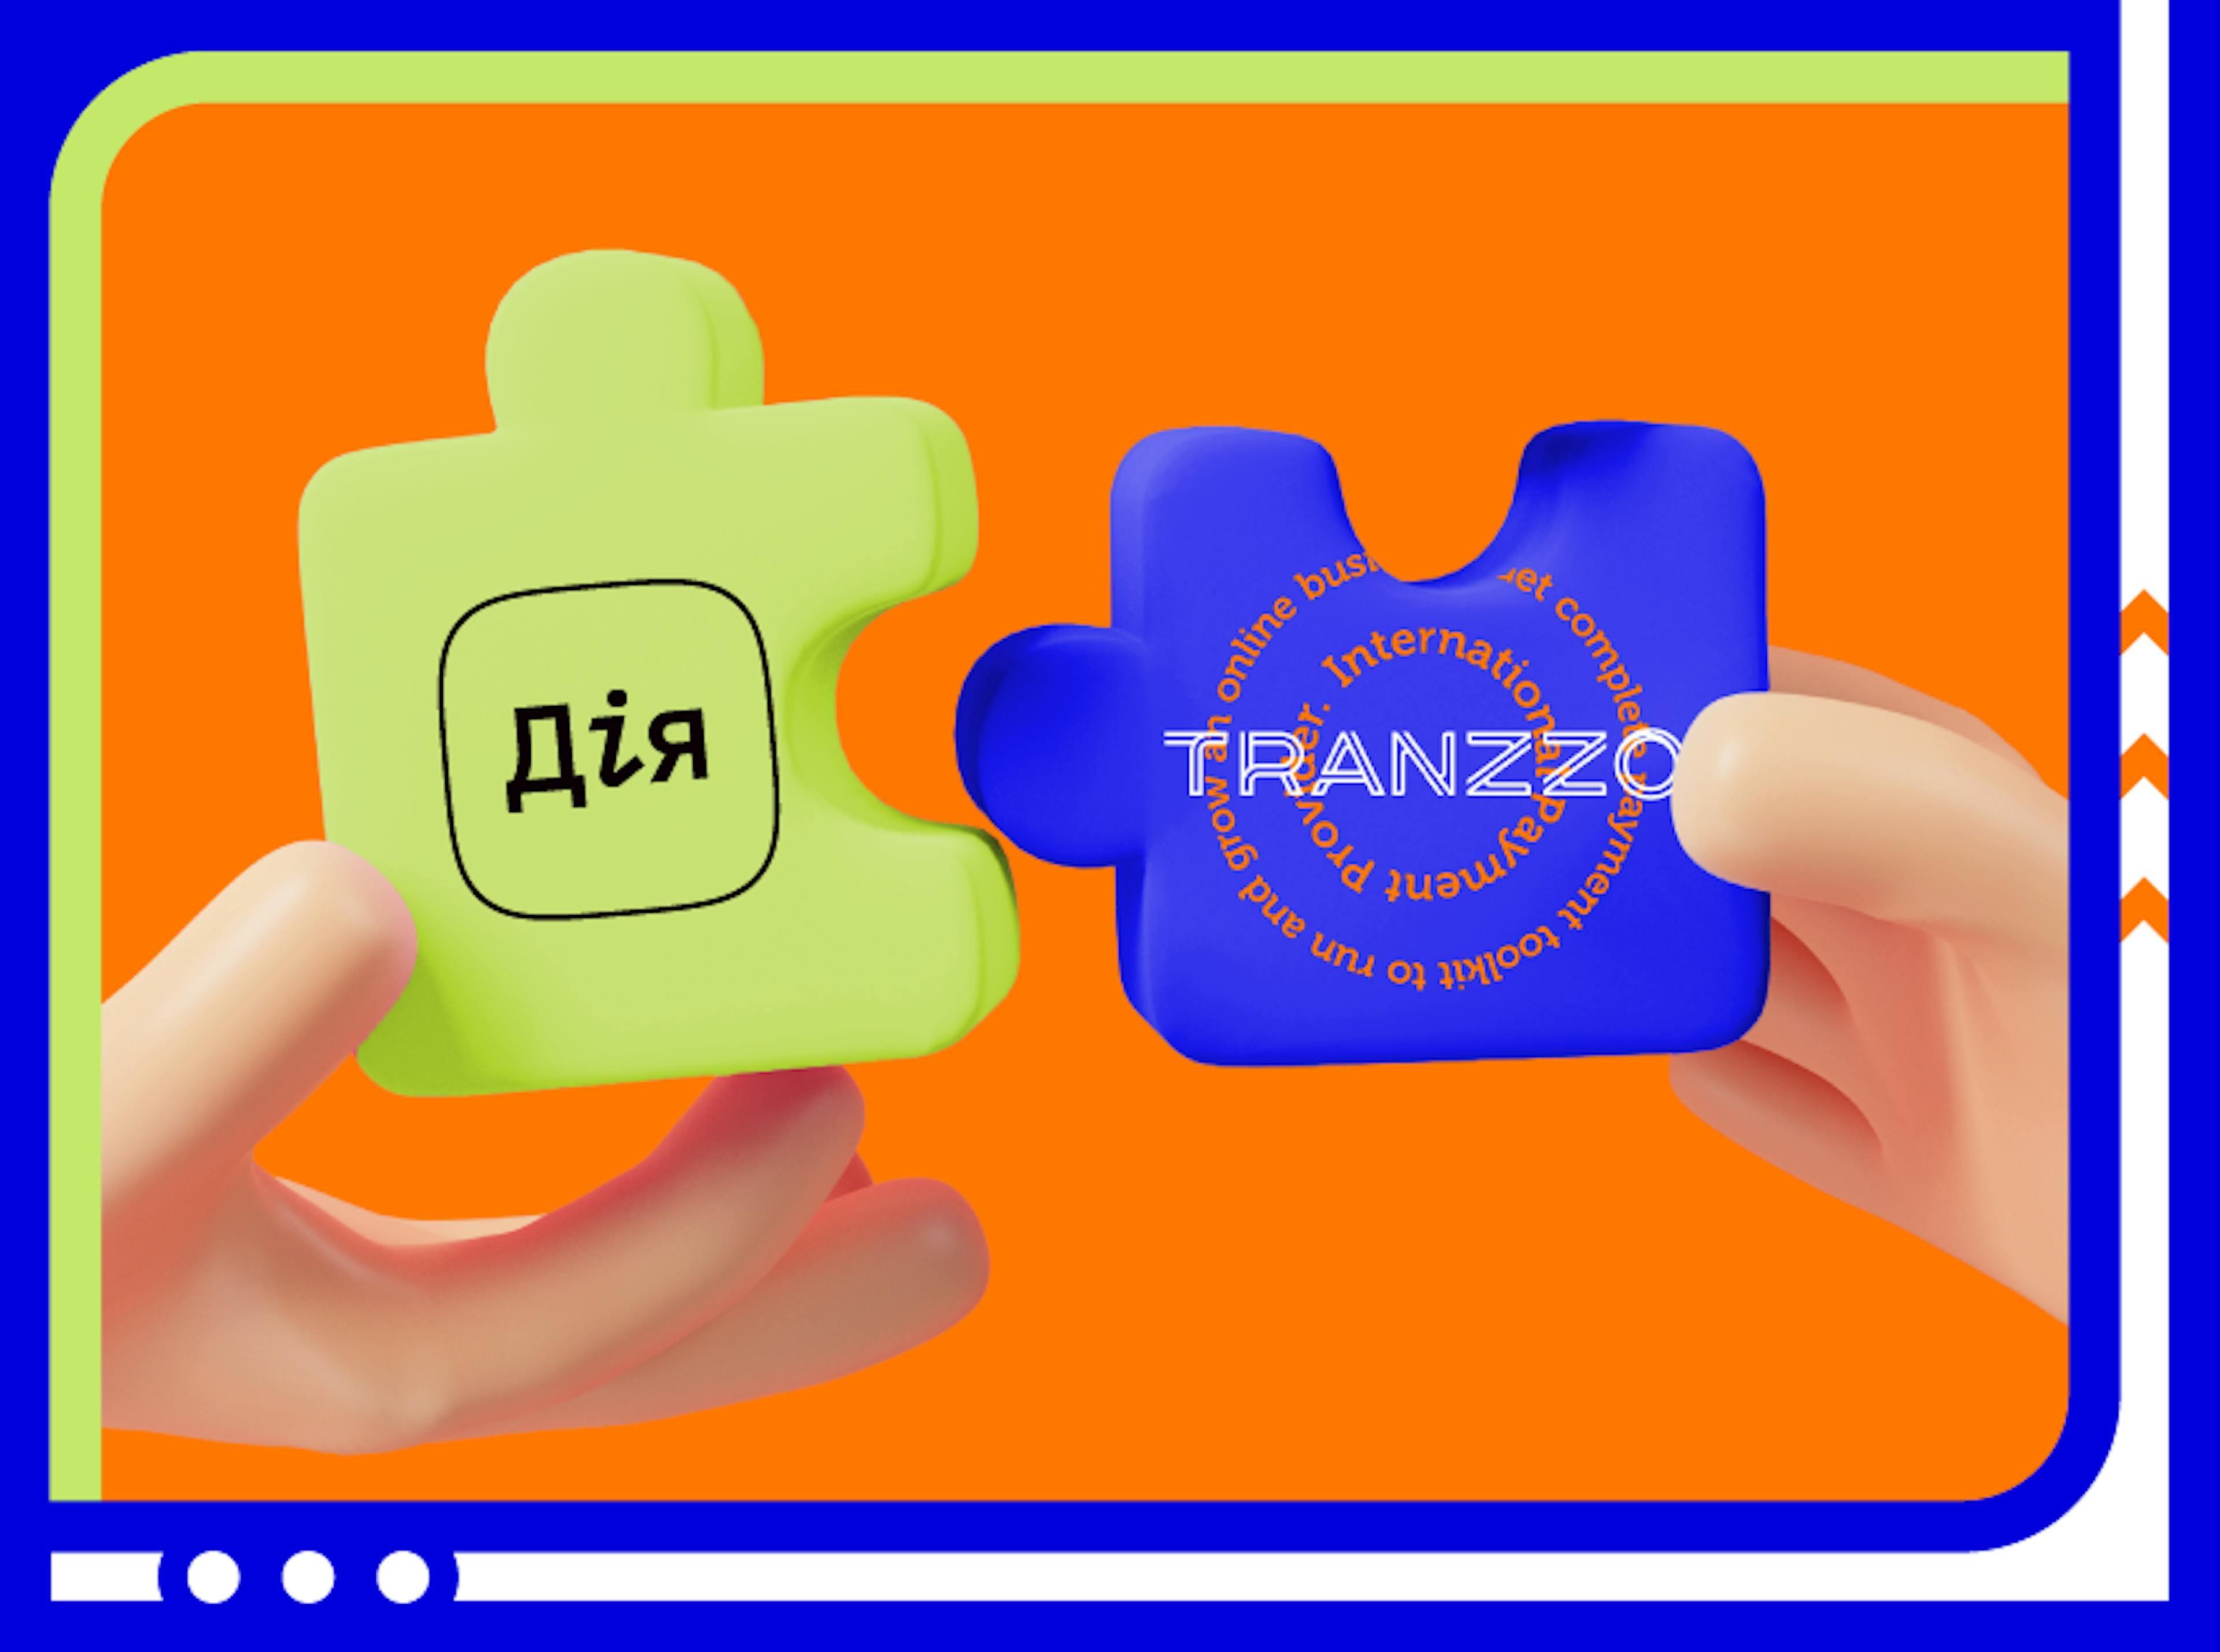 Tranzzo - технический партнер национального проекта "Дія"